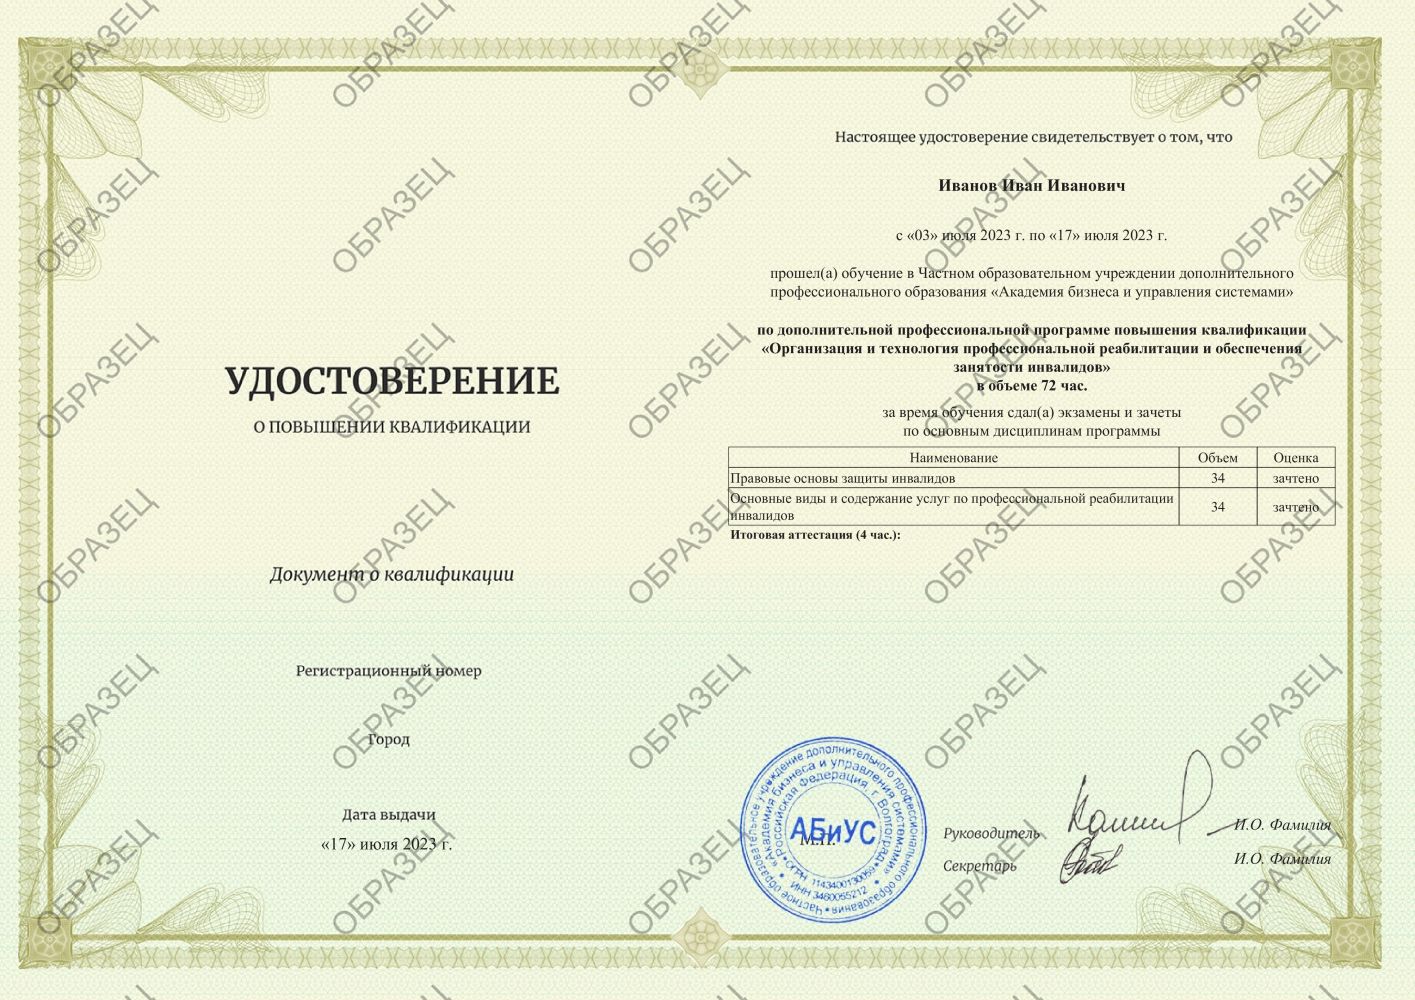 Удостоверение Организация и технология профессиональной реабилитации и обеспечения занятости инвалидов 72 часа 7250 руб.